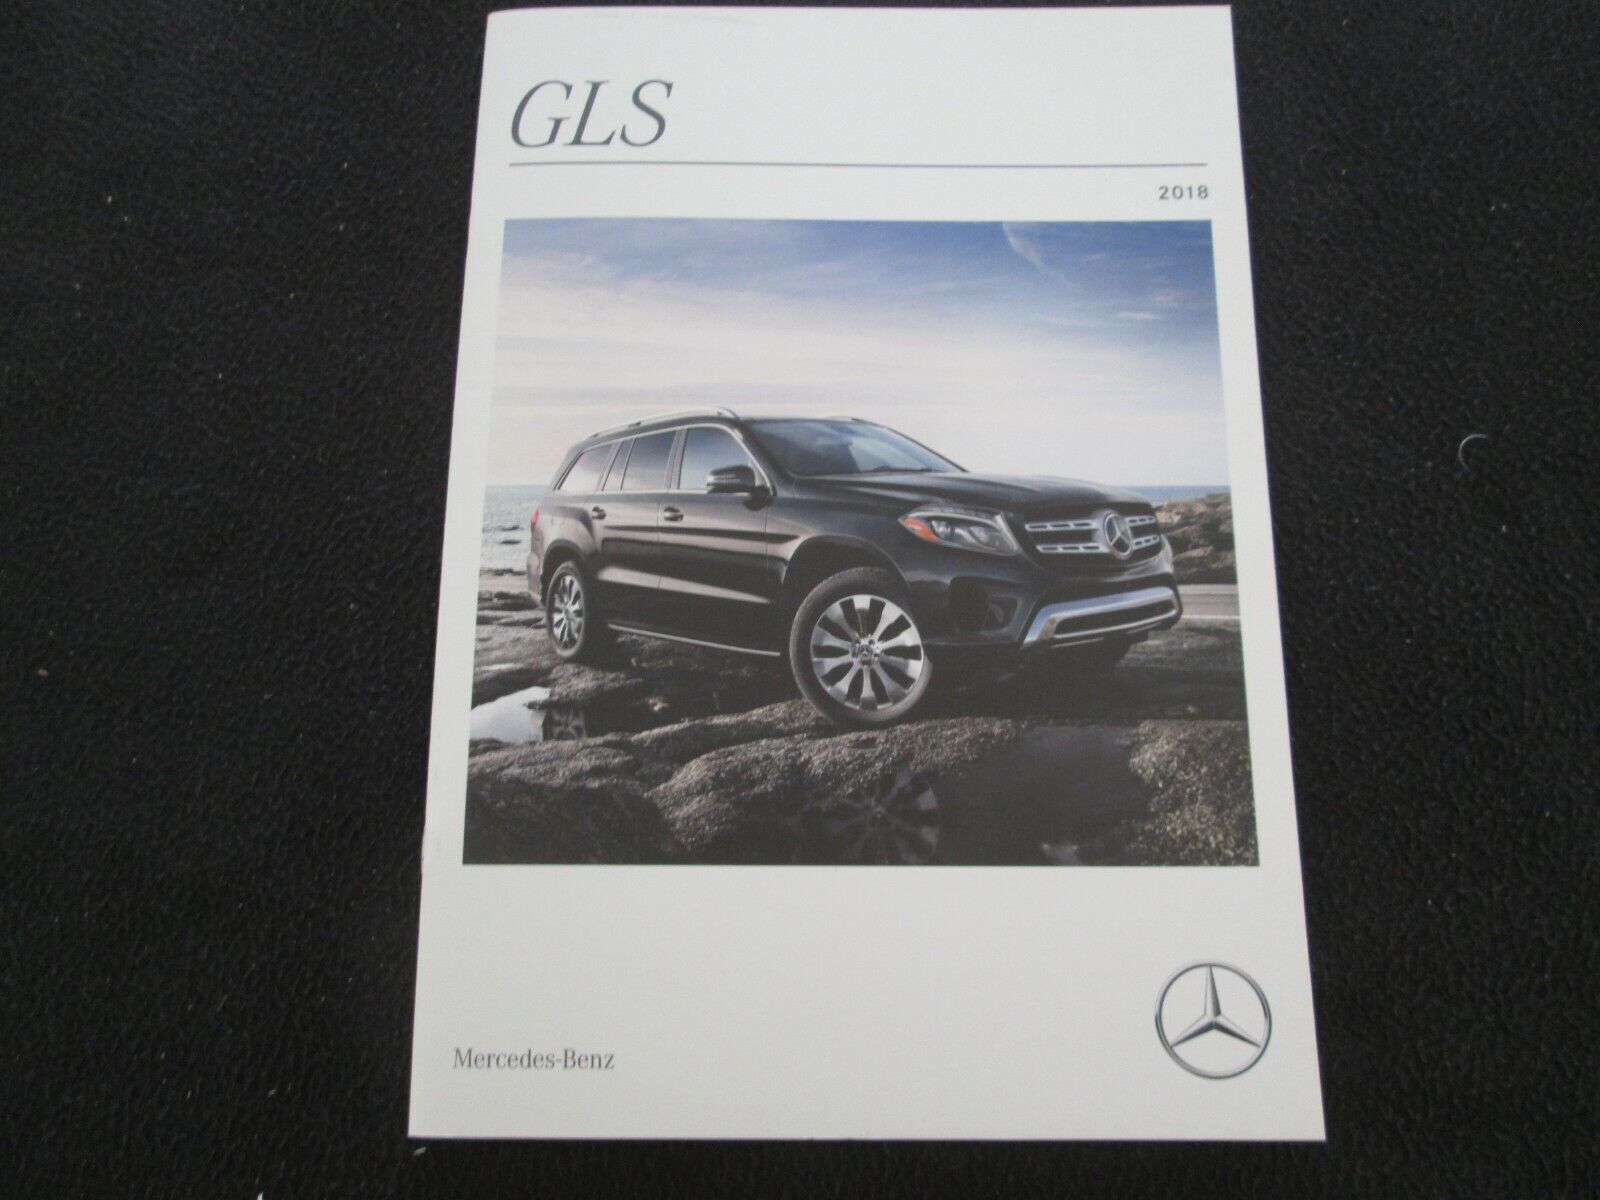 2018 Mercedes Benz Gls-class Brochure Gls450 Gls550 Gls63 Amg Catalog 450 550 63